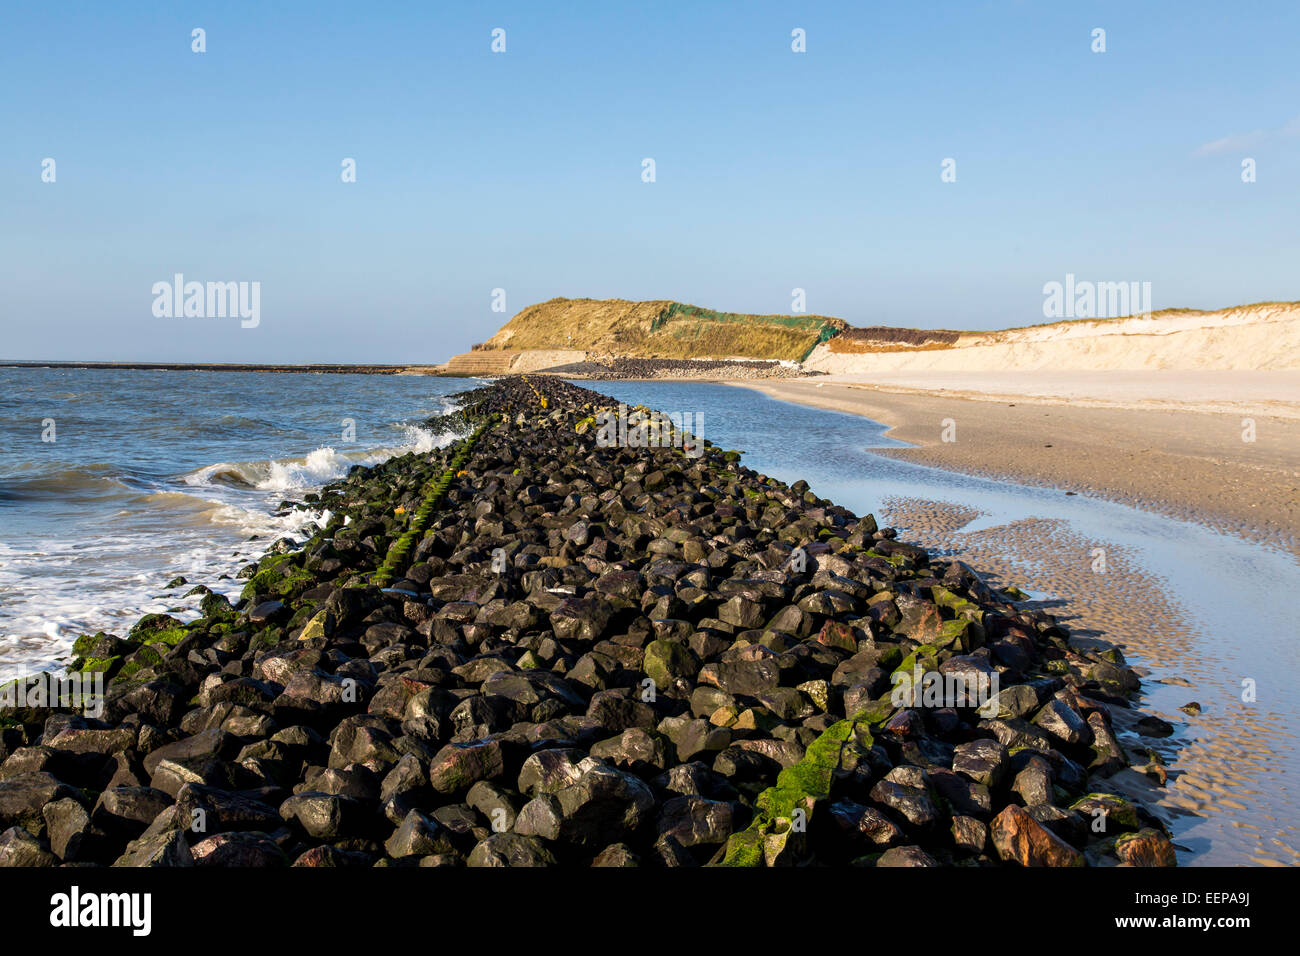 Küstenschutz-Projekt an der West Küste Nordsee Insel Spiekeroog, Deutschland, zum Schutz der Dünen und Strand von Wellen Stockfoto